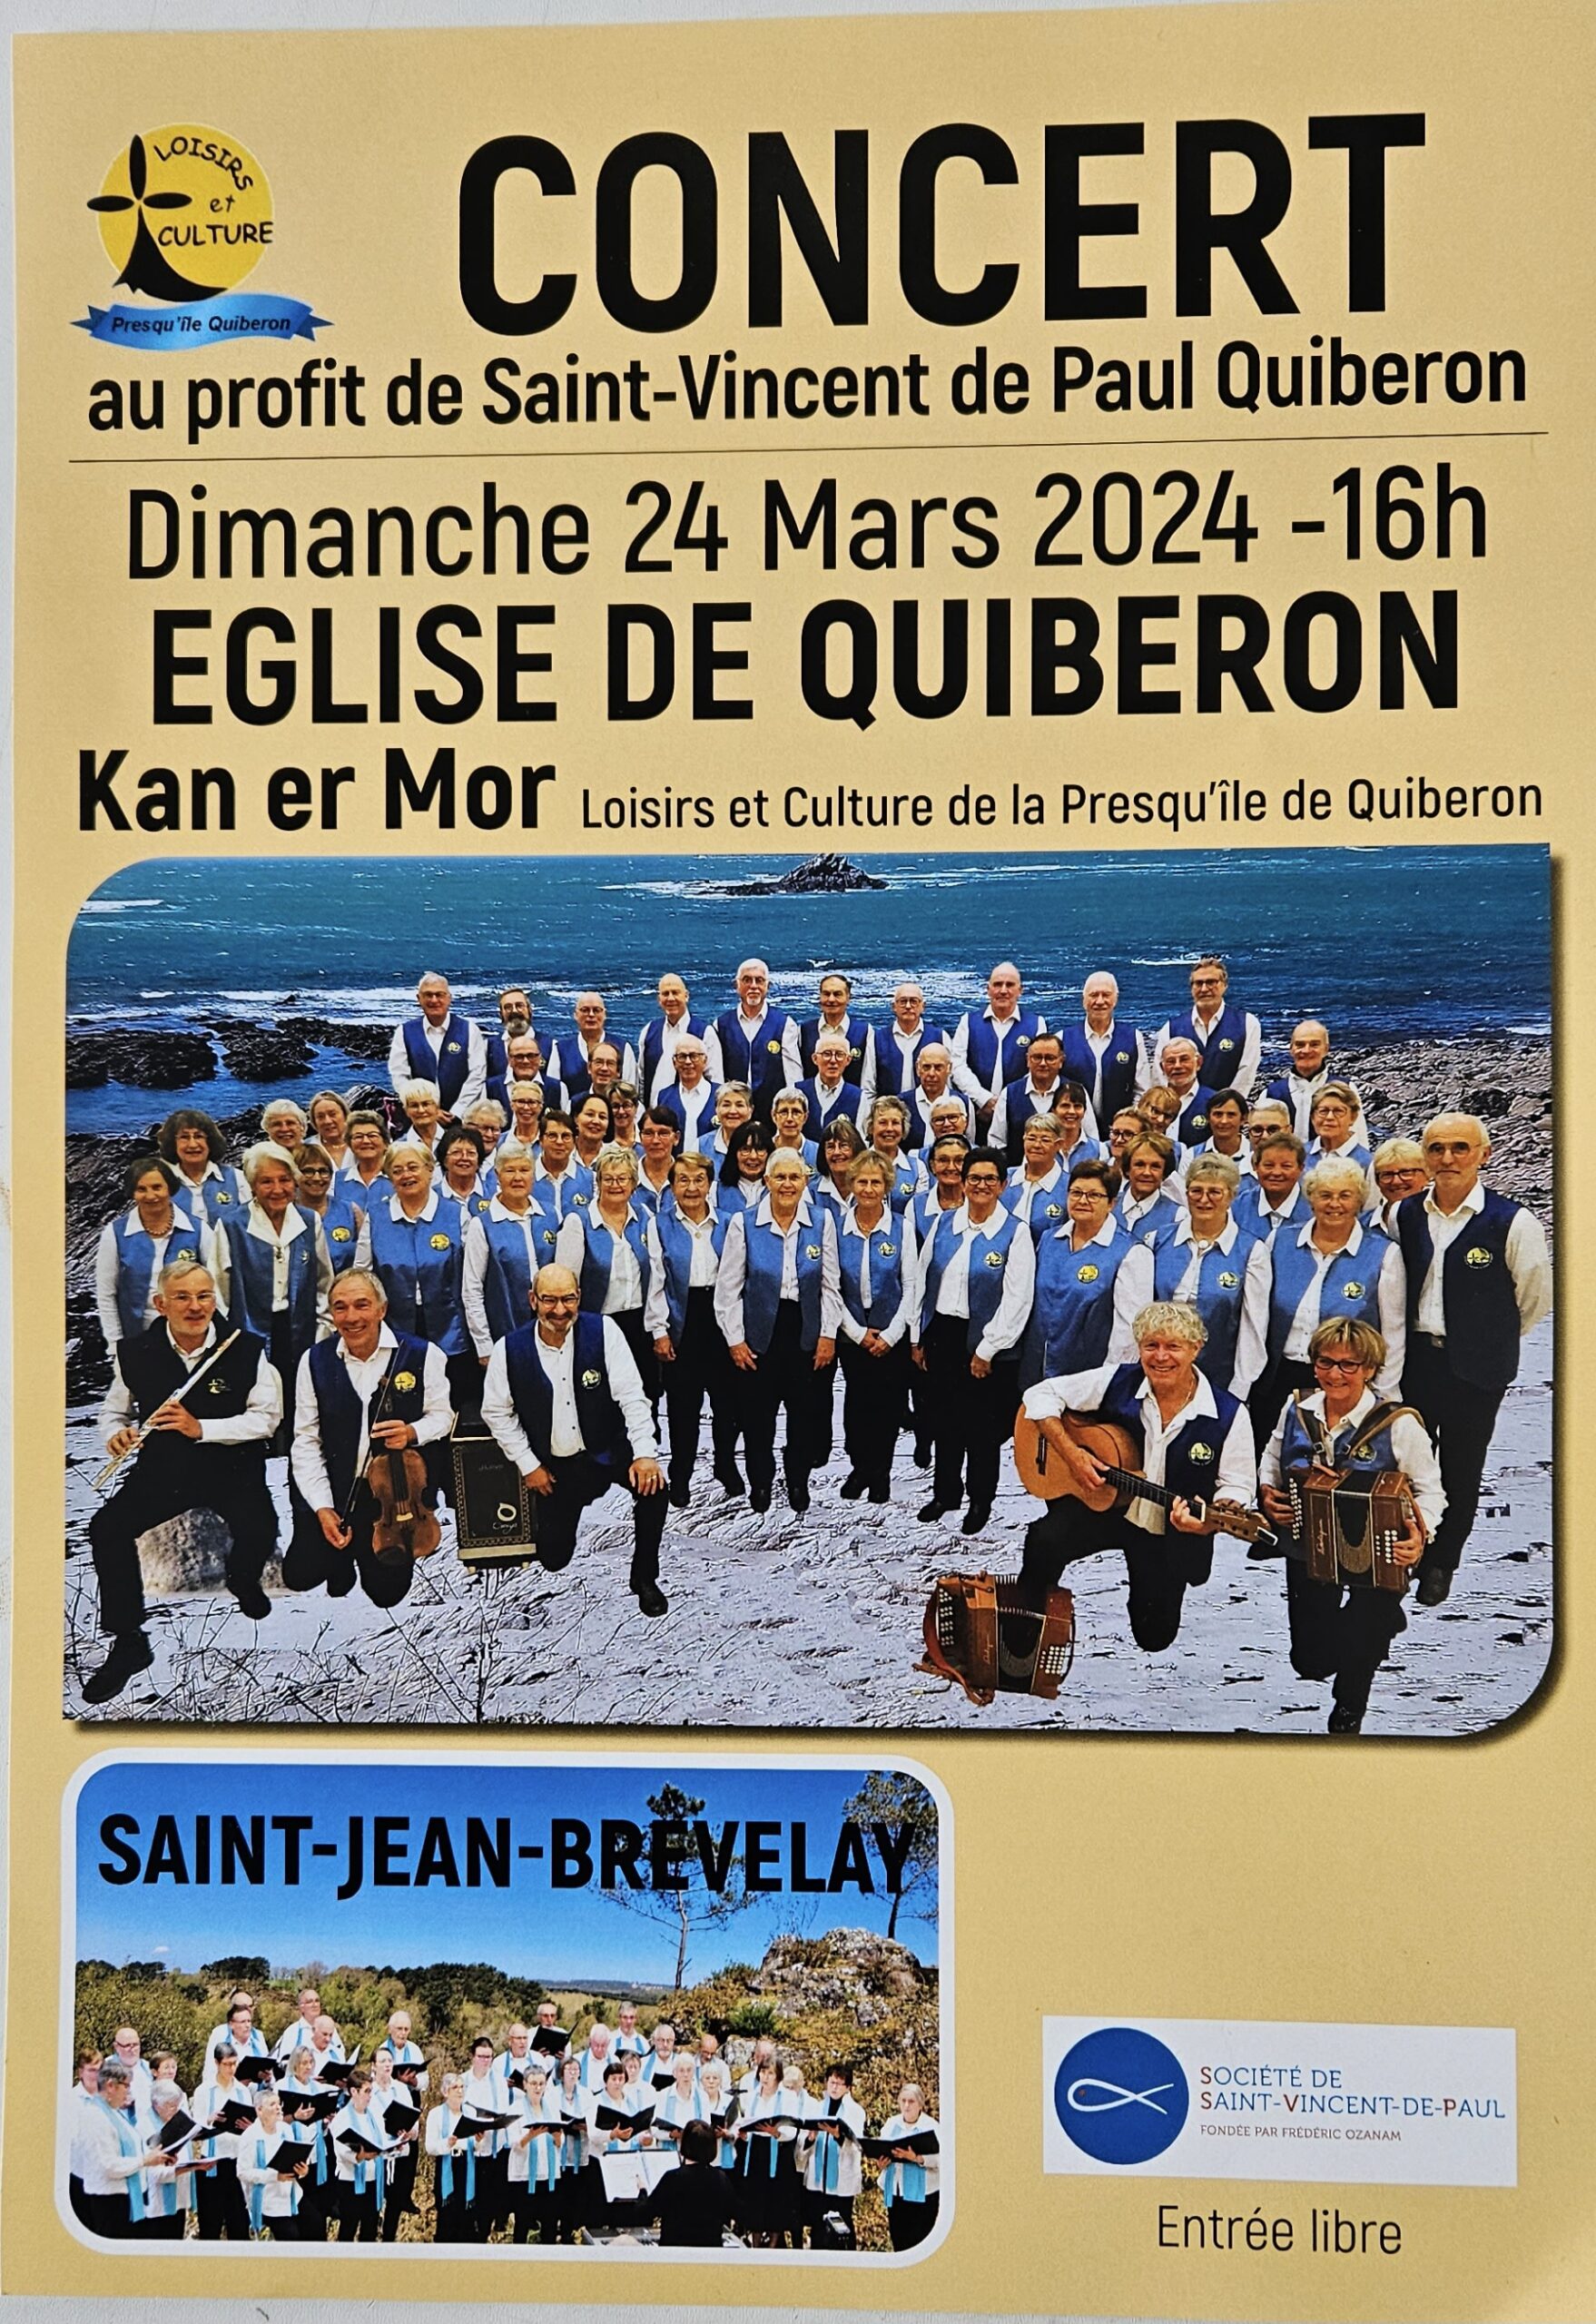 Concert des chorales Kan er Mor et Saint Jean-Brevelay 24 Mars église de Quiberon à 16h au profit de St Vincent de Paul